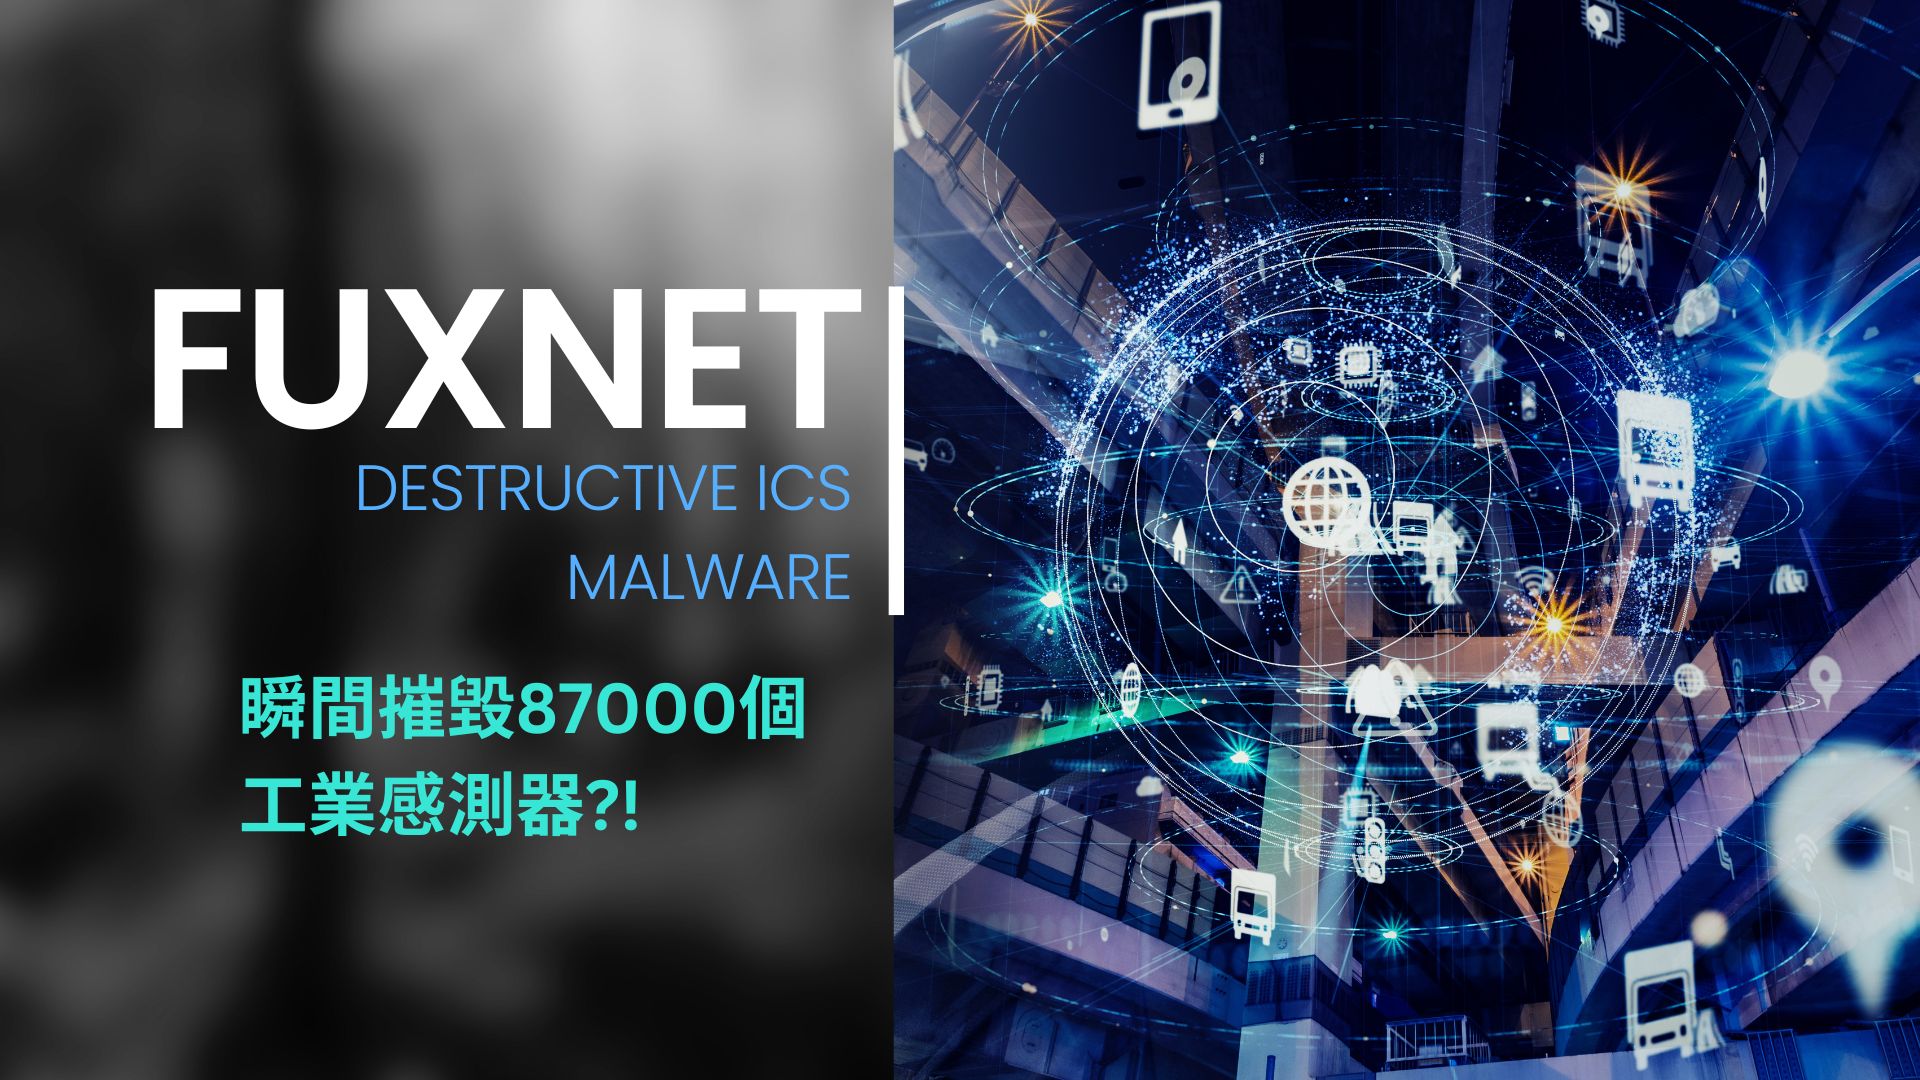 他山之石! 惡意工控軟體 Fuxnet 如何瞬間摧毀87000個工業感測器